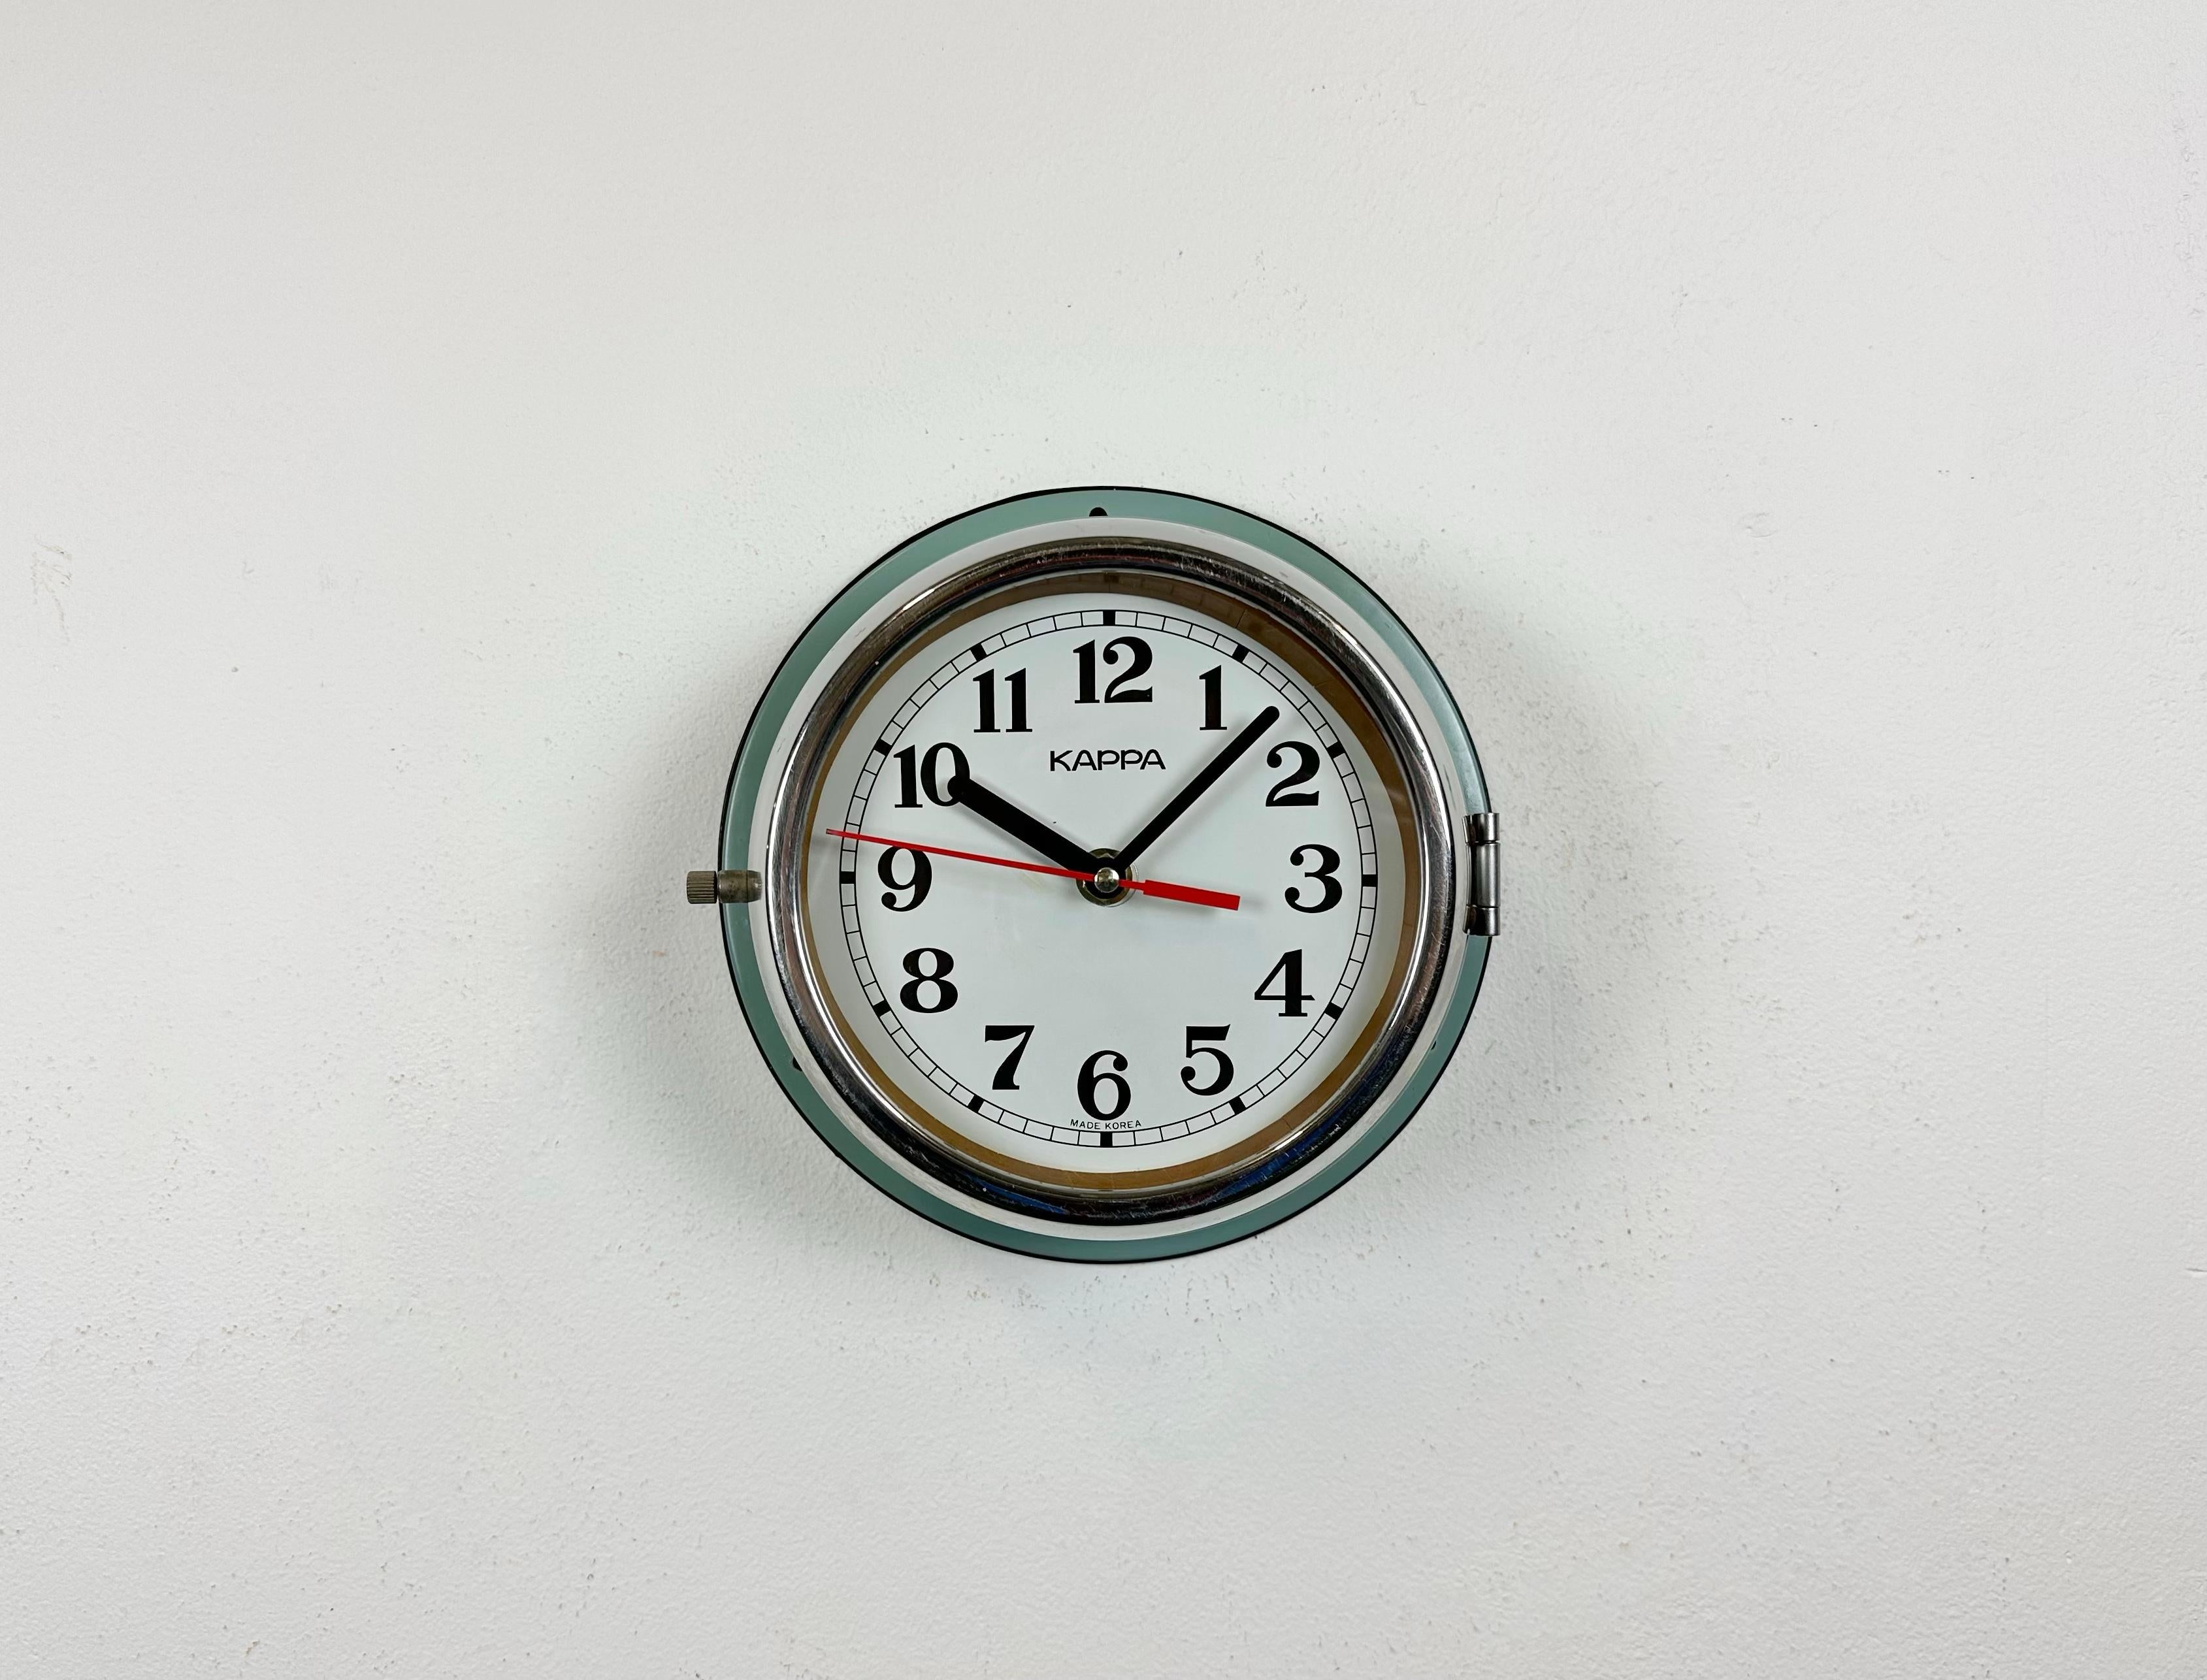 Vintage Kappa navy slave clock conçu dans les années 1970 et produit jusqu'aux années 1990. Ces horloges étaient utilisées sur les grands pétroliers et cargos coréens. Il comporte un corps en métal vert, un cadran en métal et un couvercle en verre